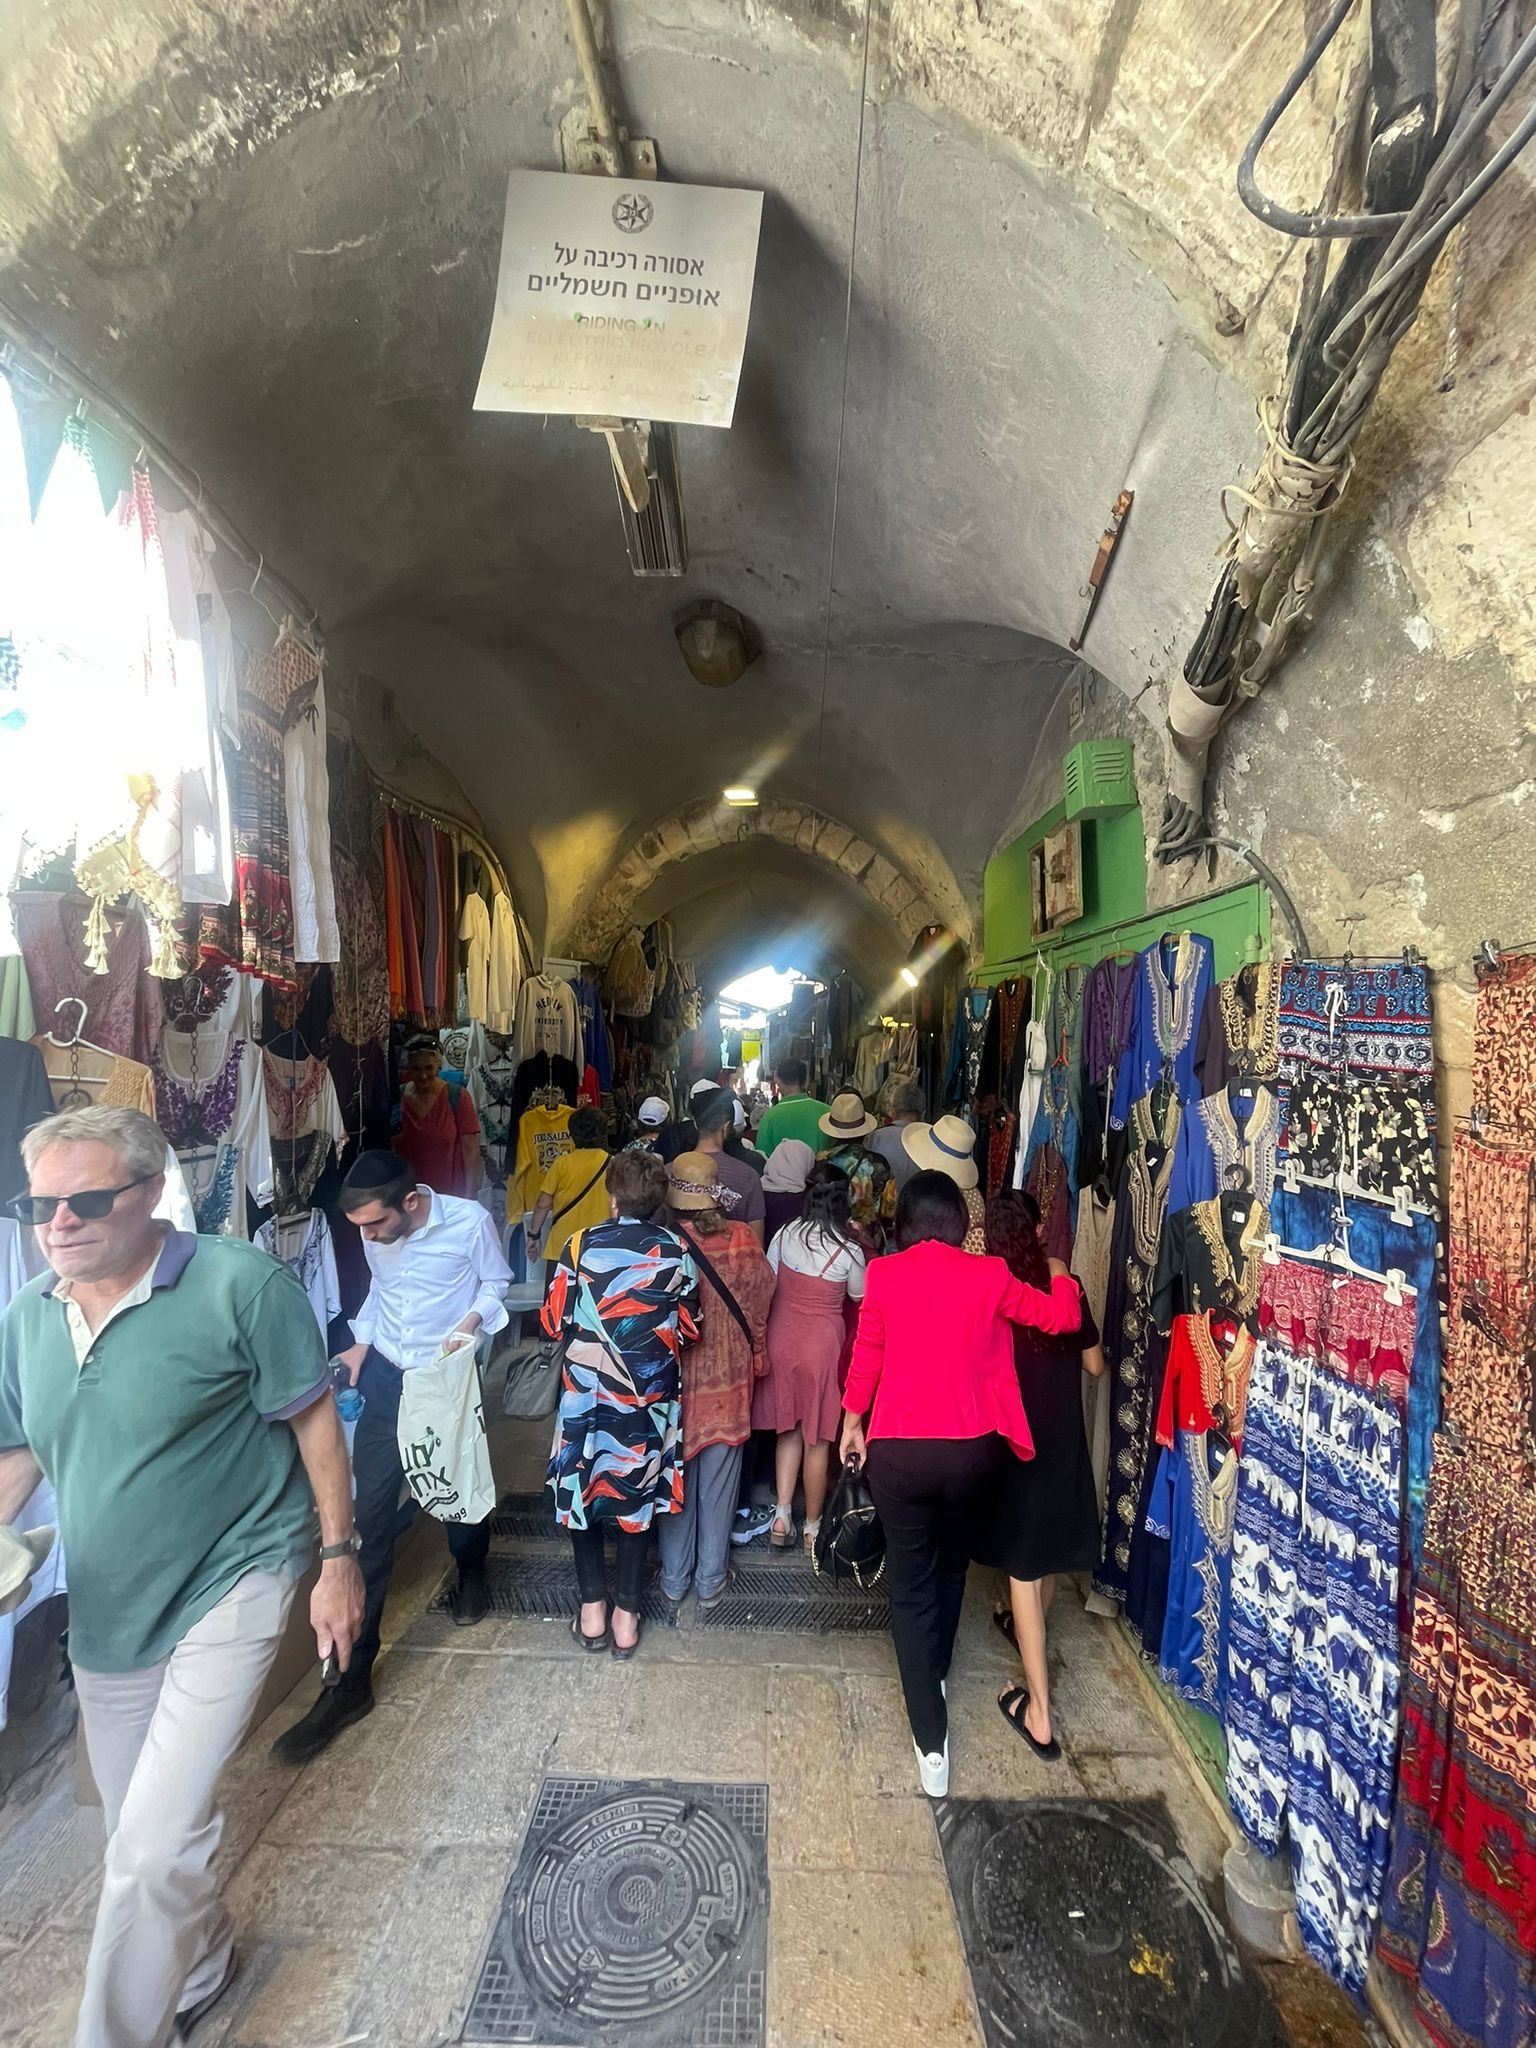 اقبال ملحوظ على السياحة الدينية في القدس الشرقية-4